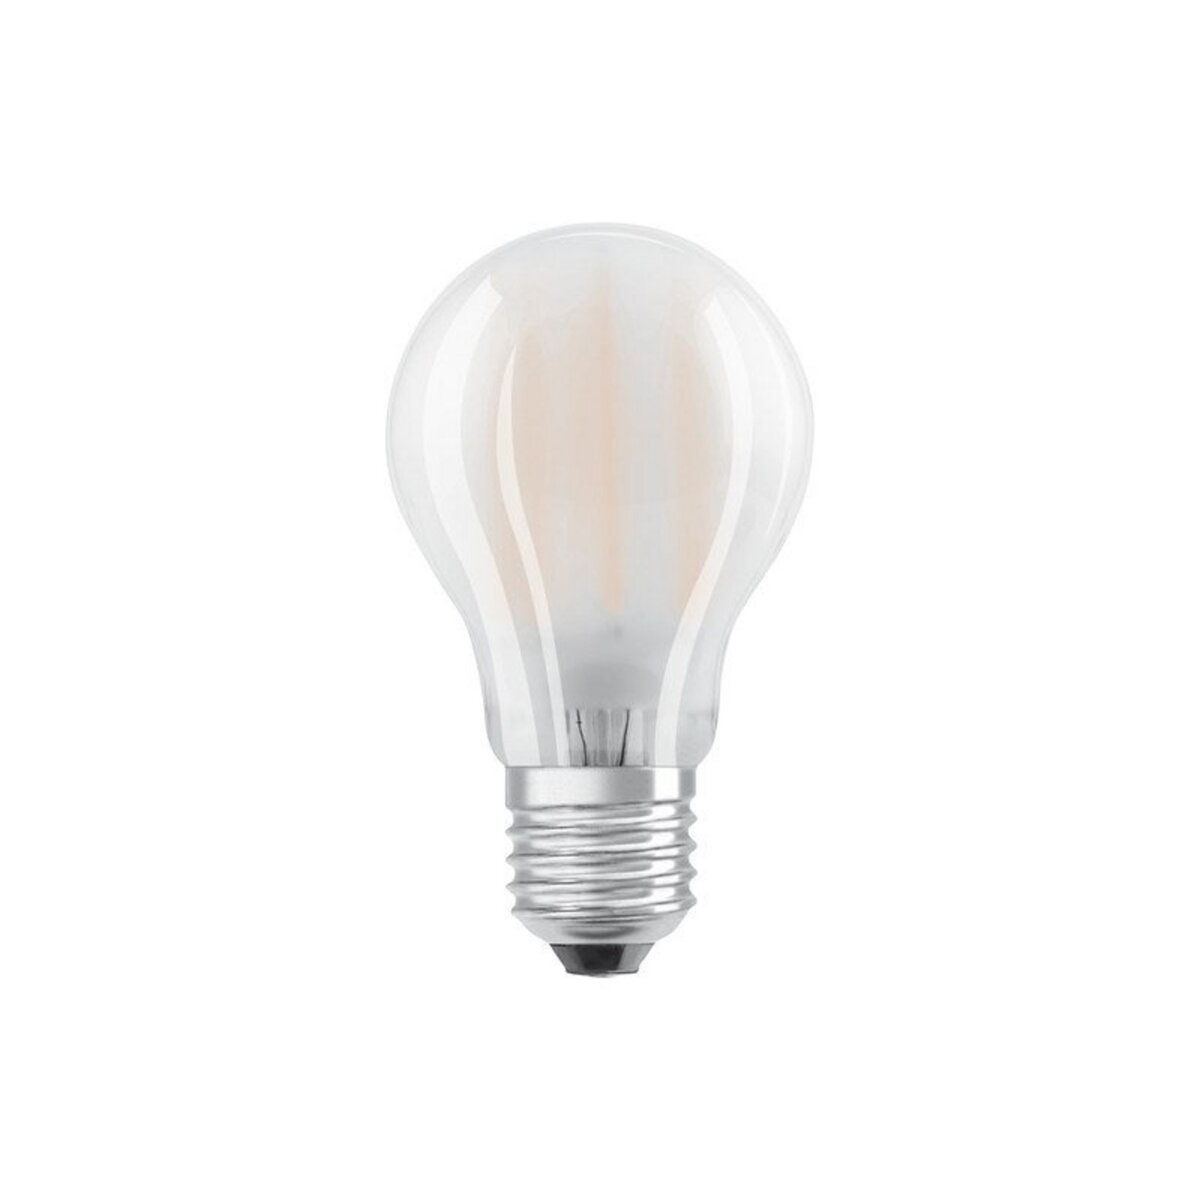 Osram 5 Ampoules Led Opaque Standard E27 806 Lm ~ 60 W Blanc Neutre